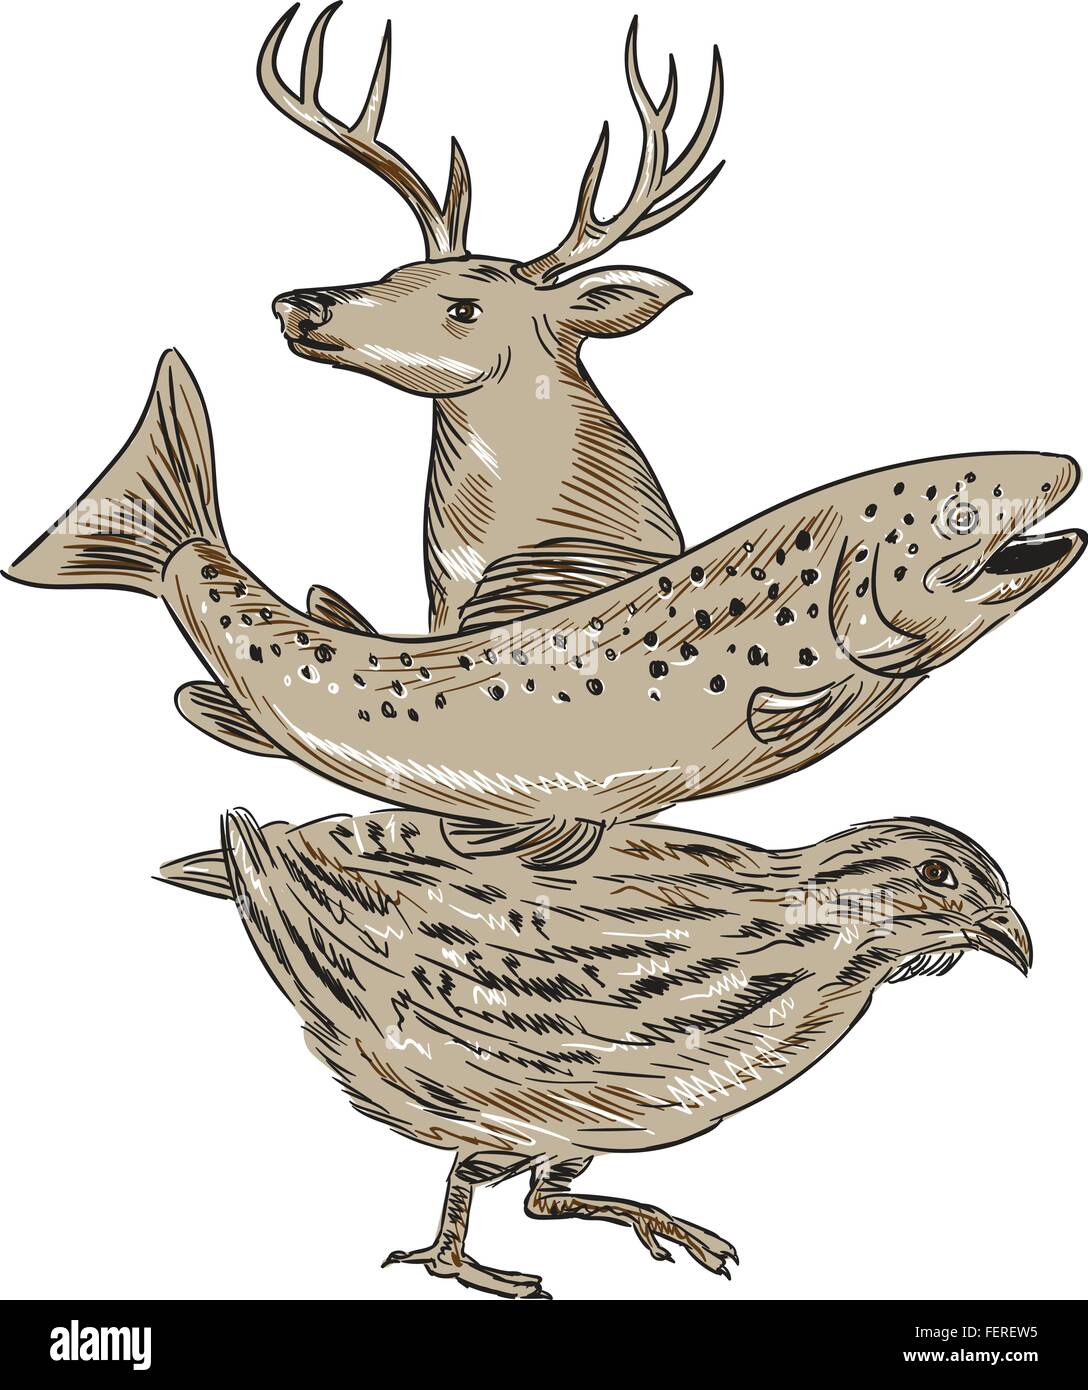 Croquis dessin illustration de style d'un cerf, la truite et les cailles vu du côté situé sur fond blanc isolé. Illustration de Vecteur